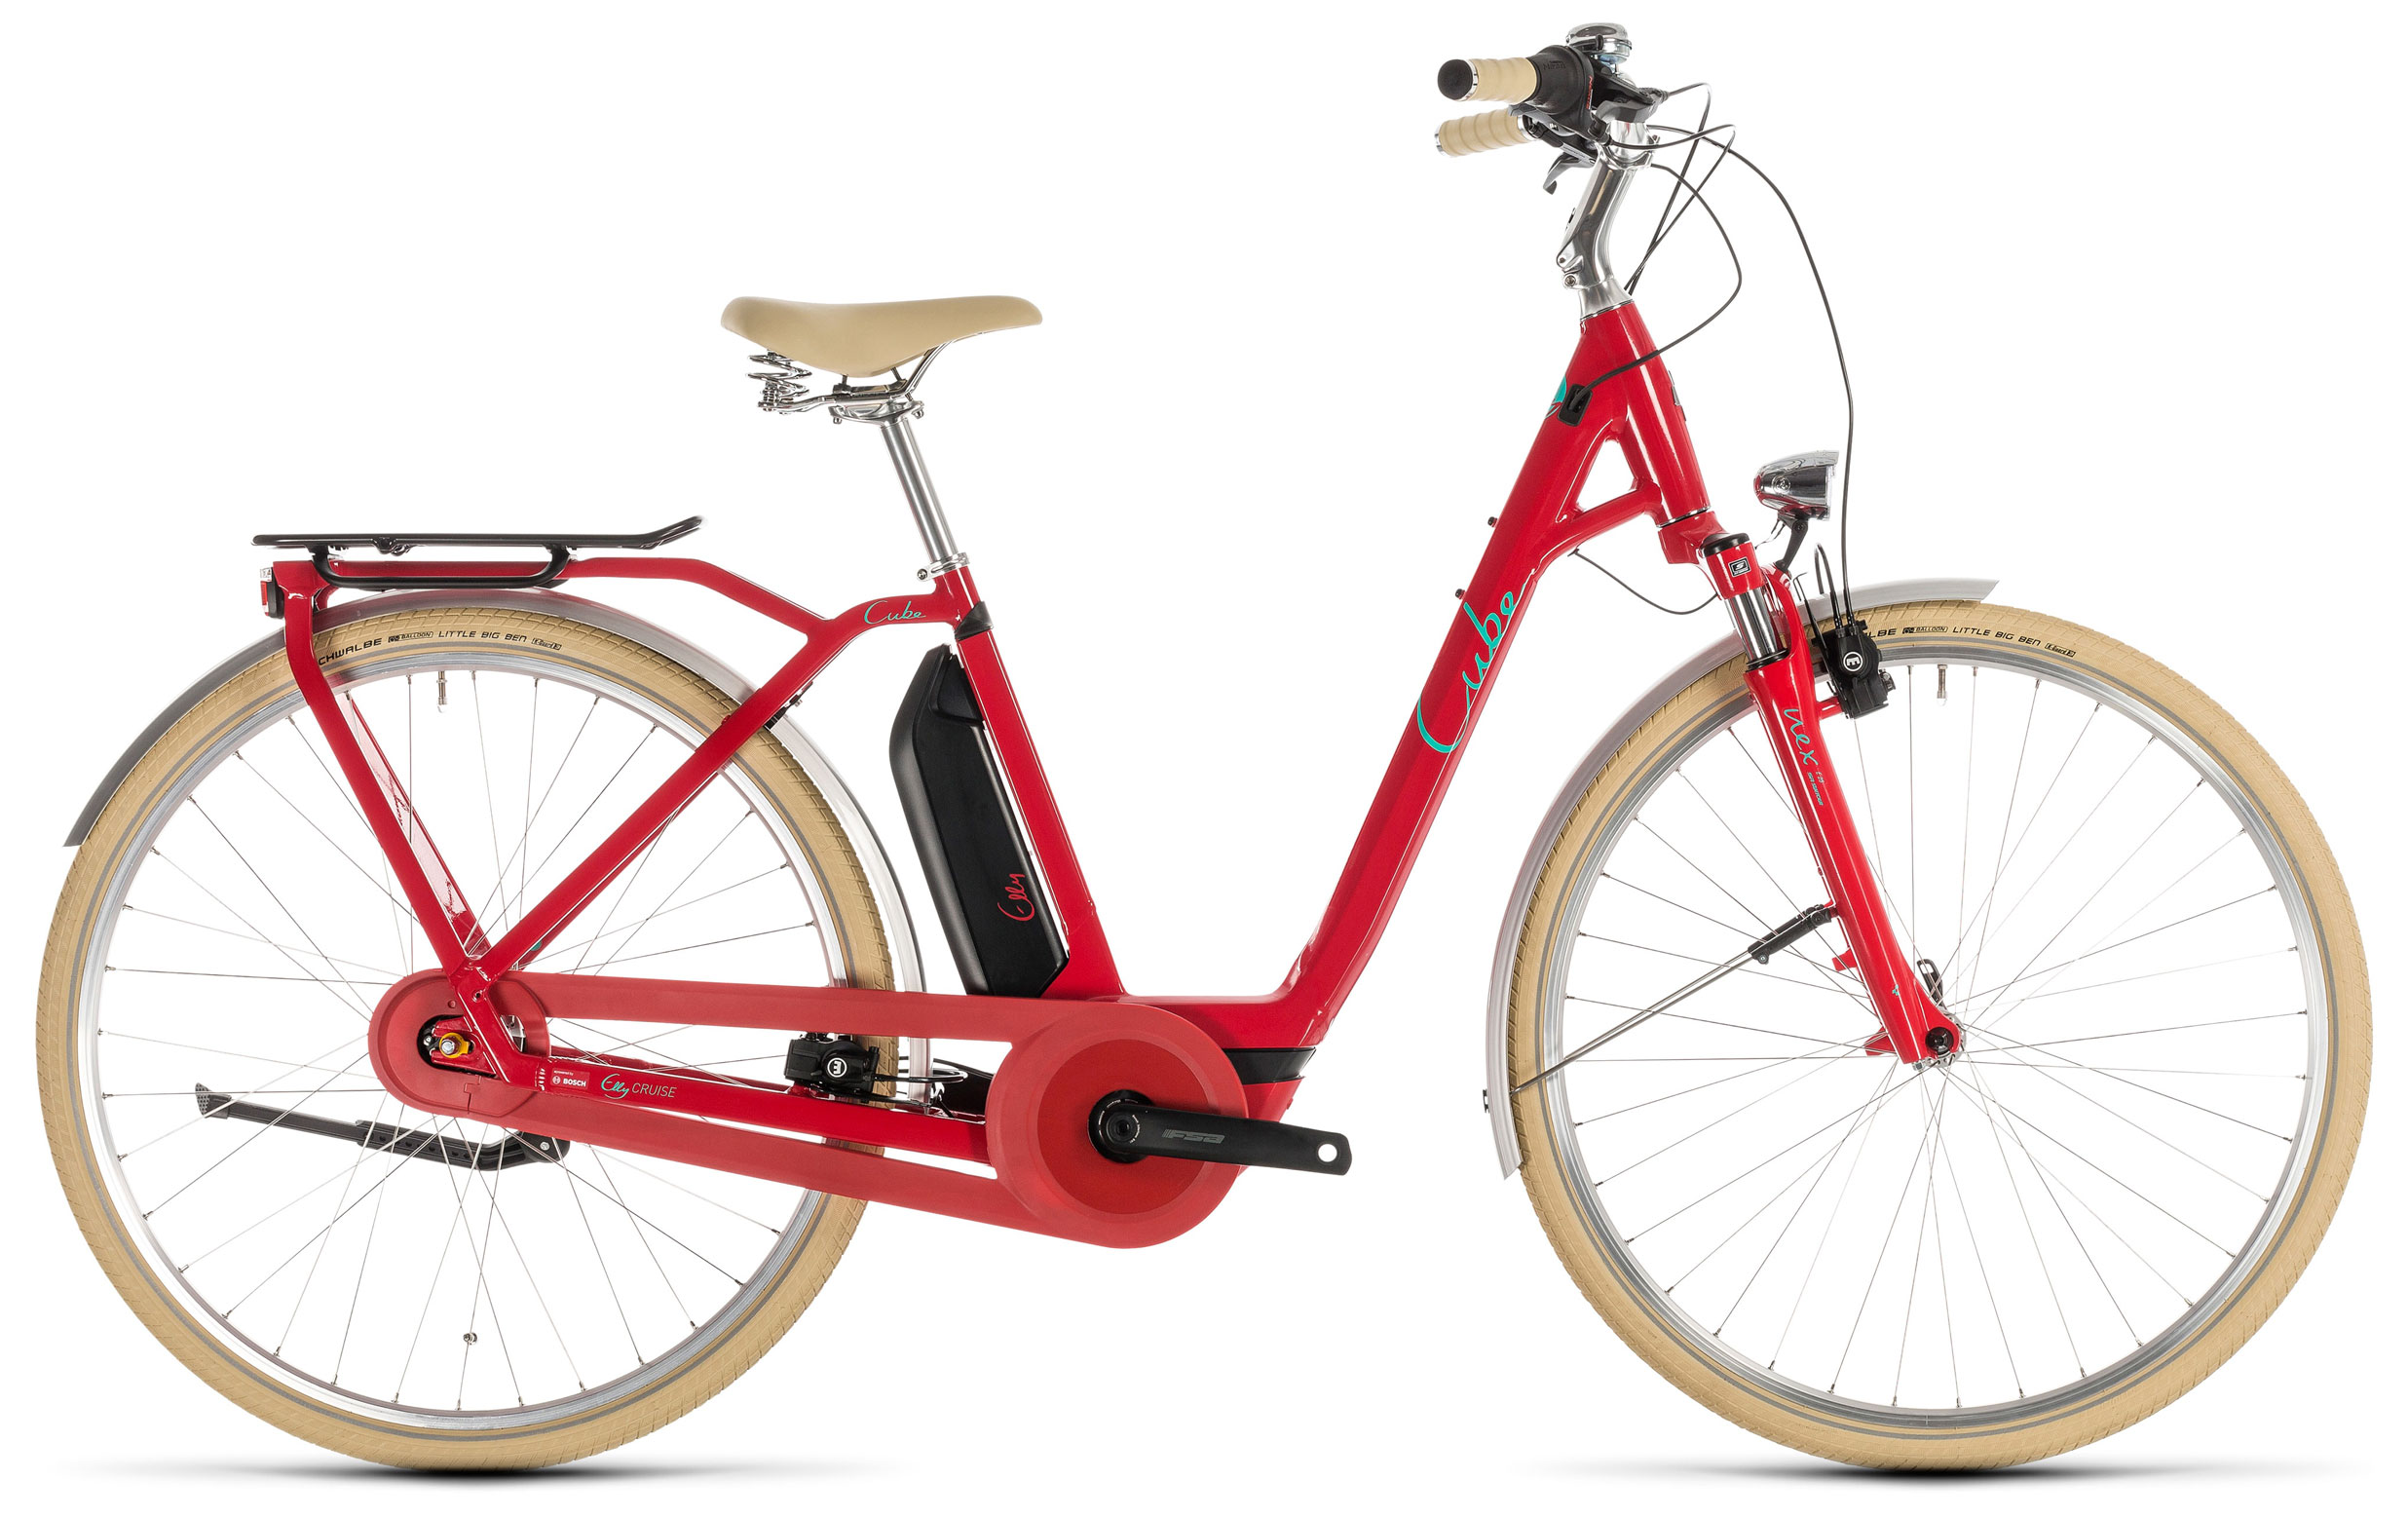  Велосипед трехколесный детский велосипед Cube Elly Cruise Hybrid 500 Easy Entry 2019